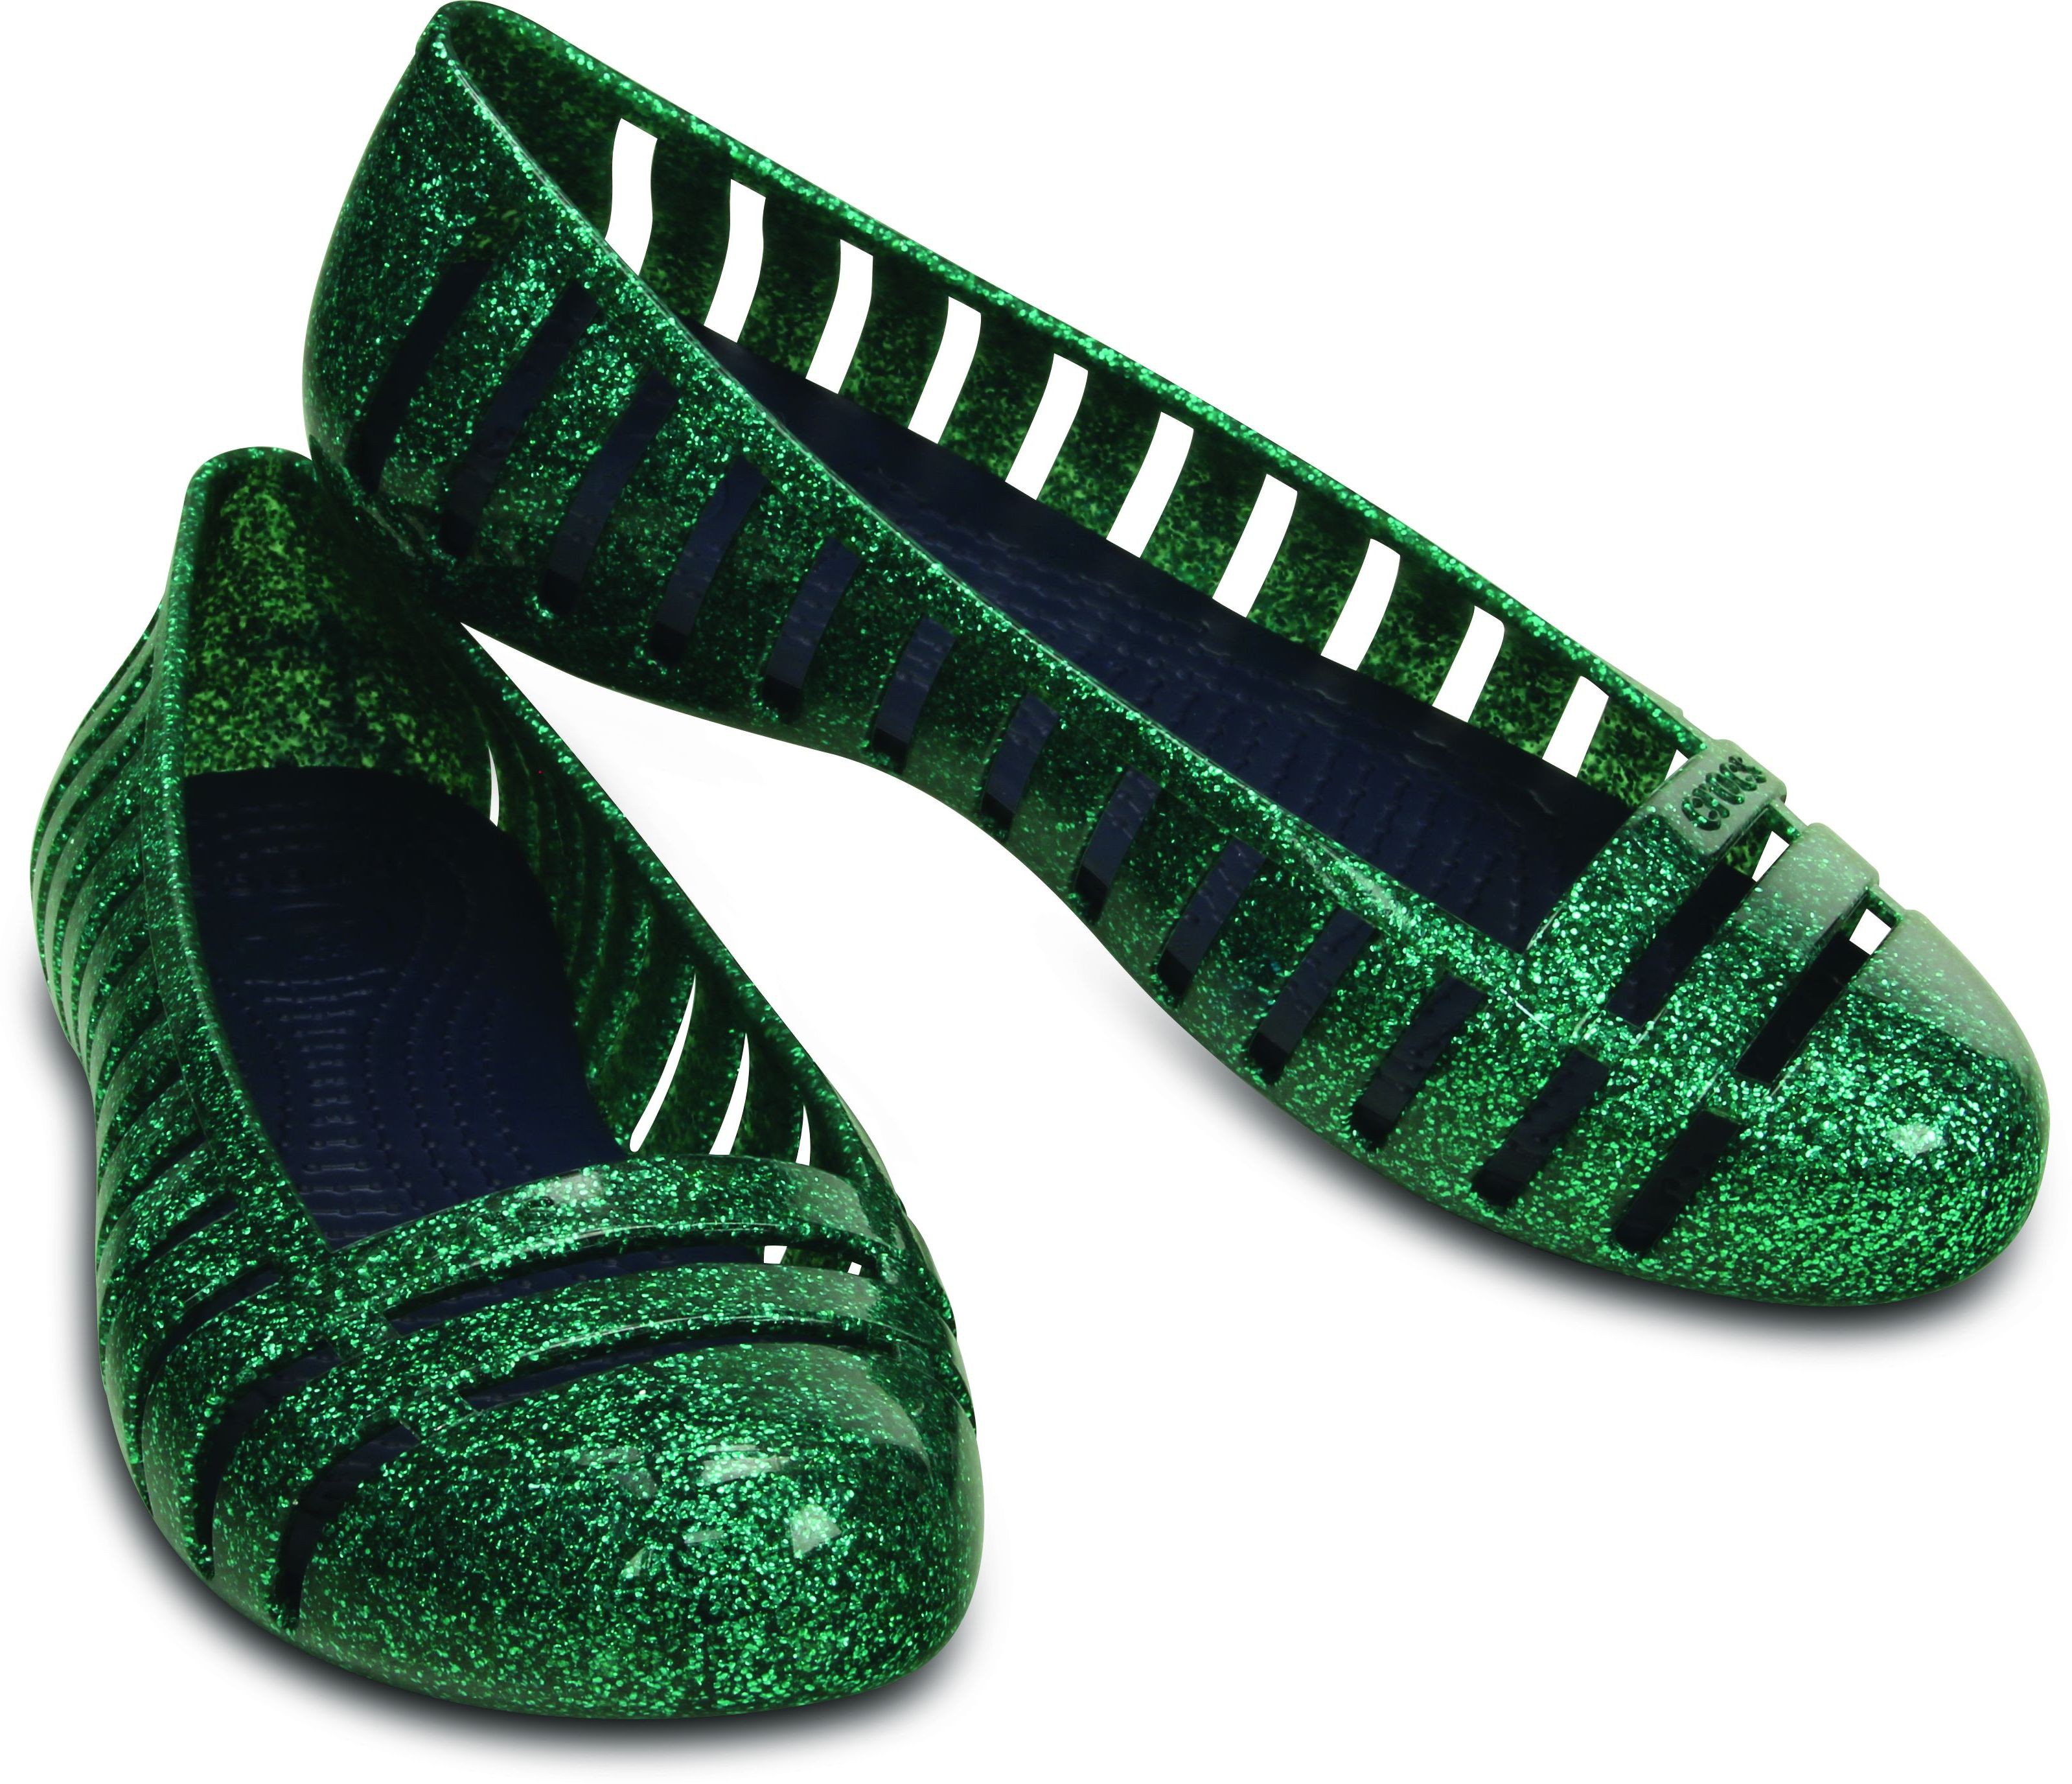 Crocs Casuals(Green)